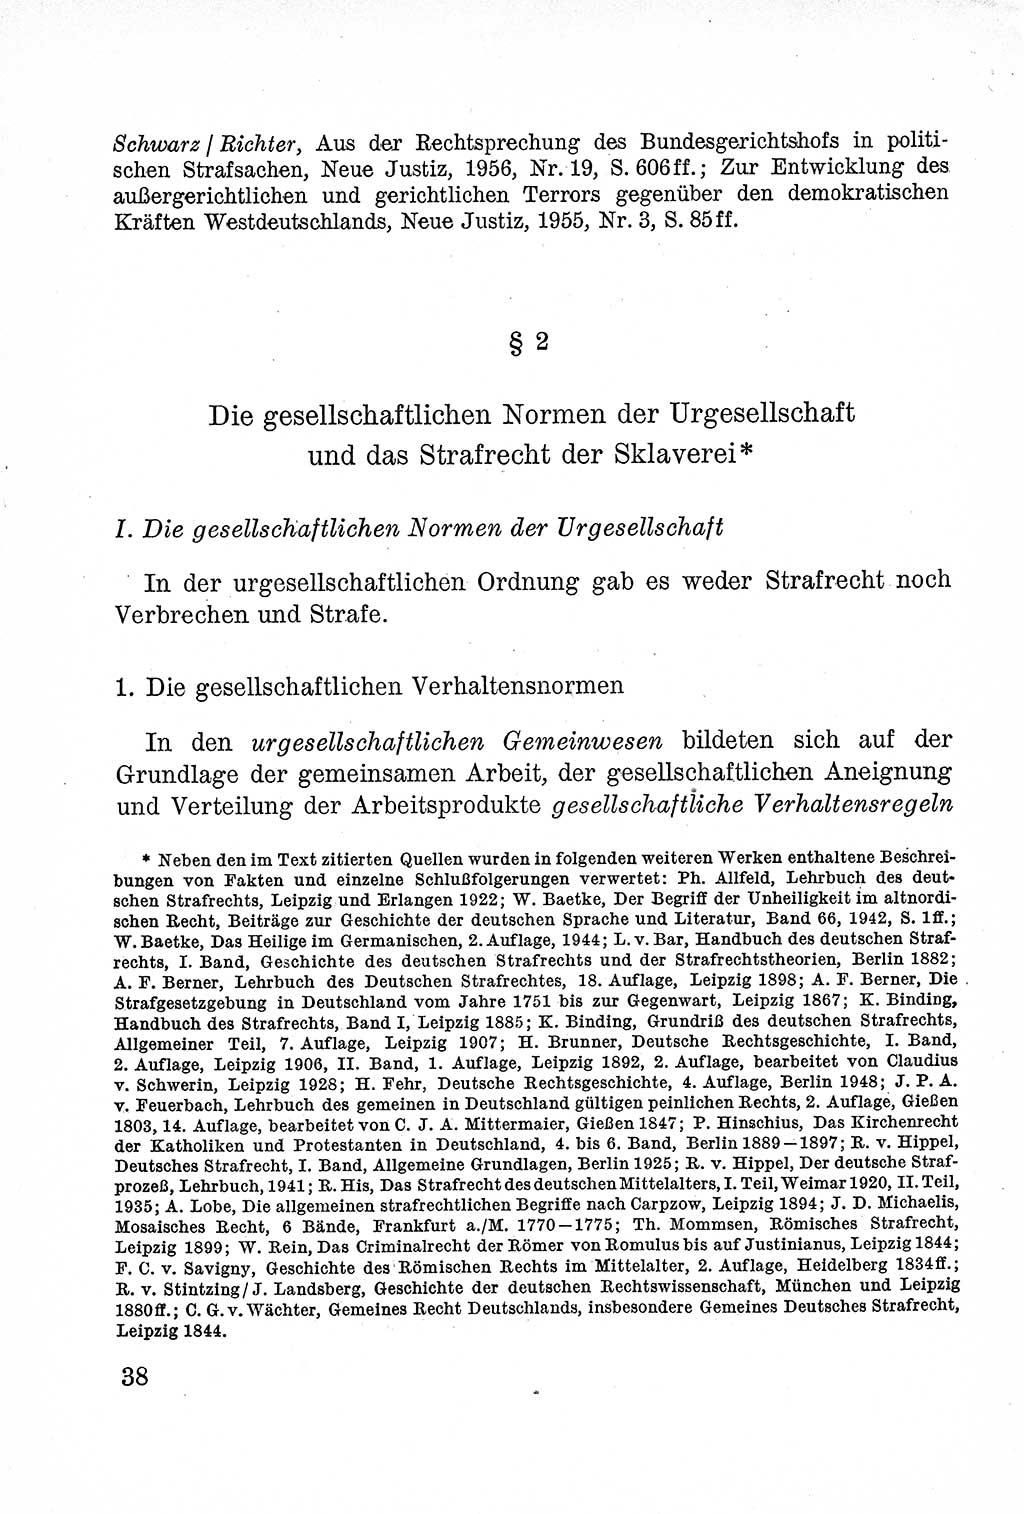 Lehrbuch des Strafrechts der Deutschen Demokratischen Republik (DDR), Allgemeiner Teil 1957, Seite 38 (Lb. Strafr. DDR AT 1957, S. 38)